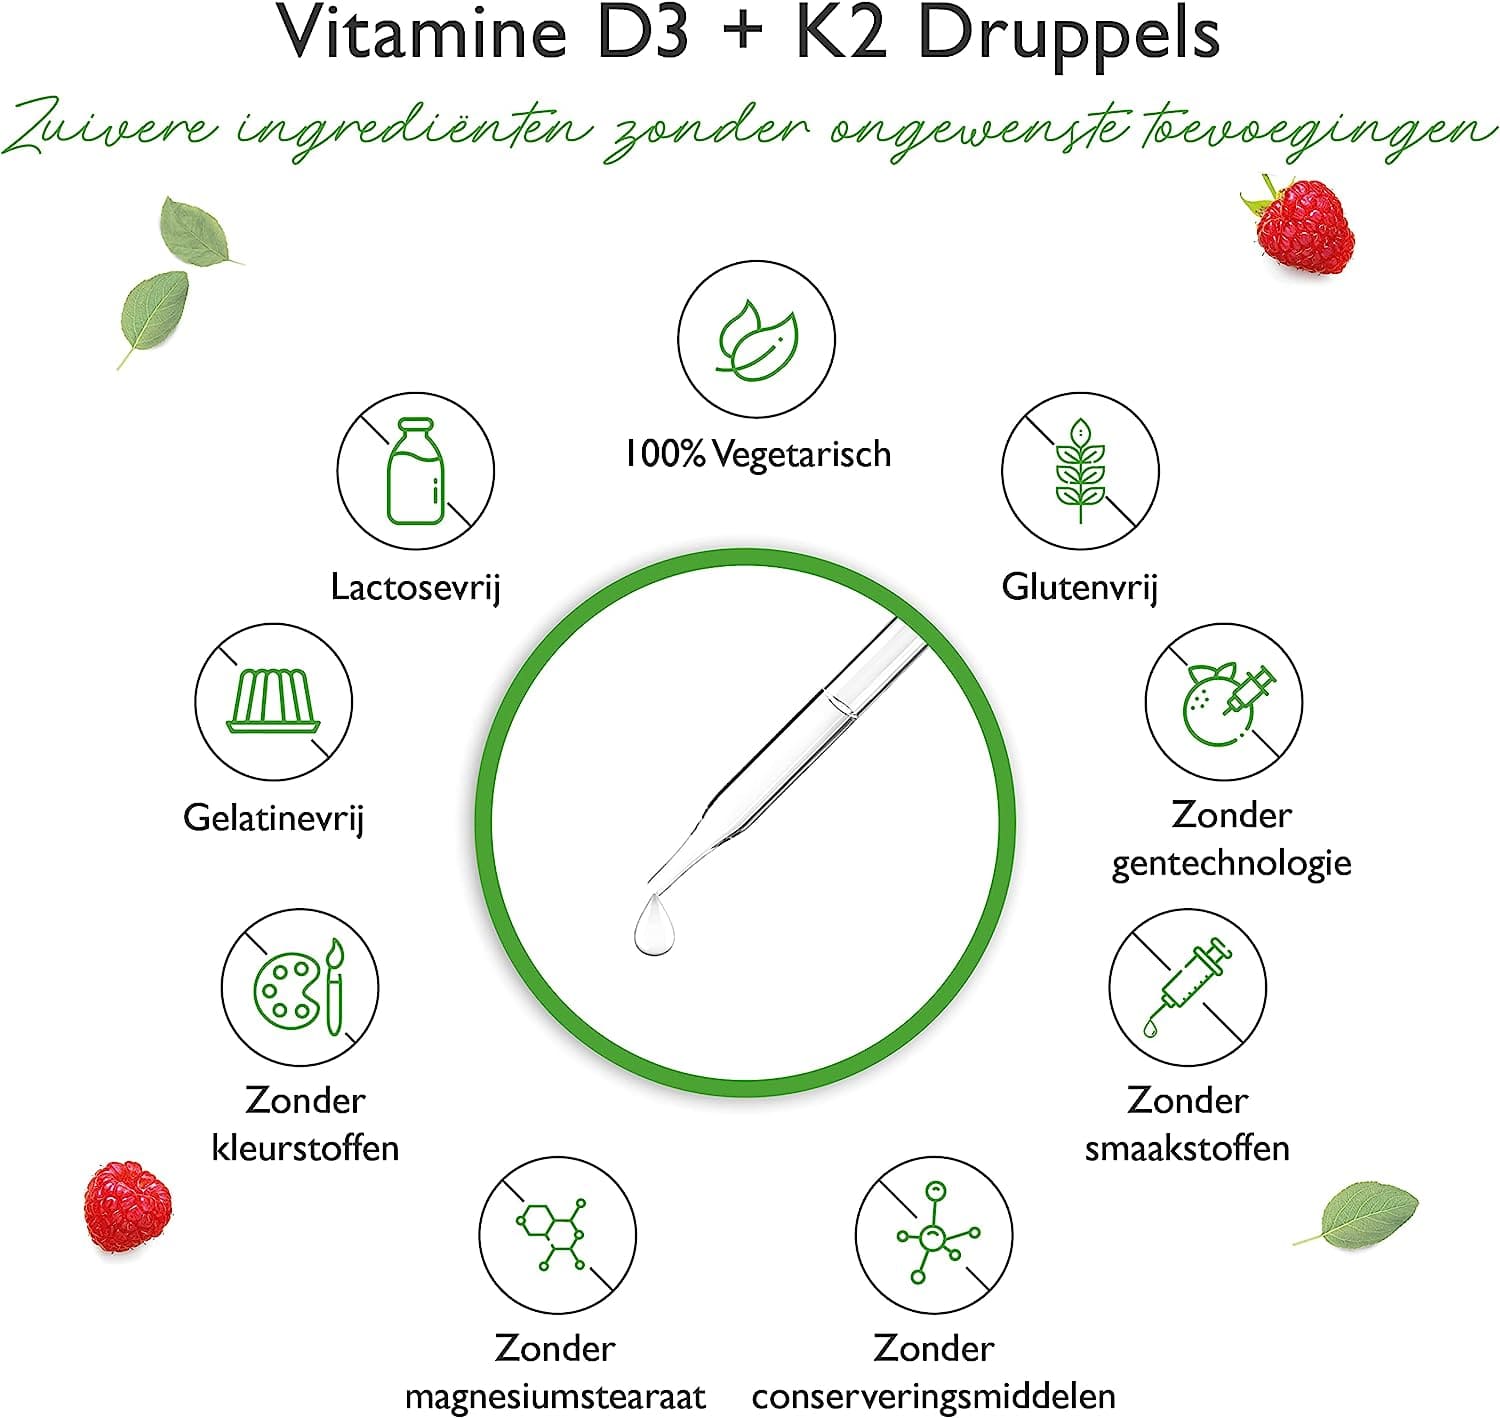 Vitamine D3 + K2 druppels 50ml - Premium: 99,7+% All-Trans (Original K2VITAL® by Kappa) - Hoog gedoseerd met 1000 IE vitamine D3 per druppel (1700 druppels) - In MCT olie